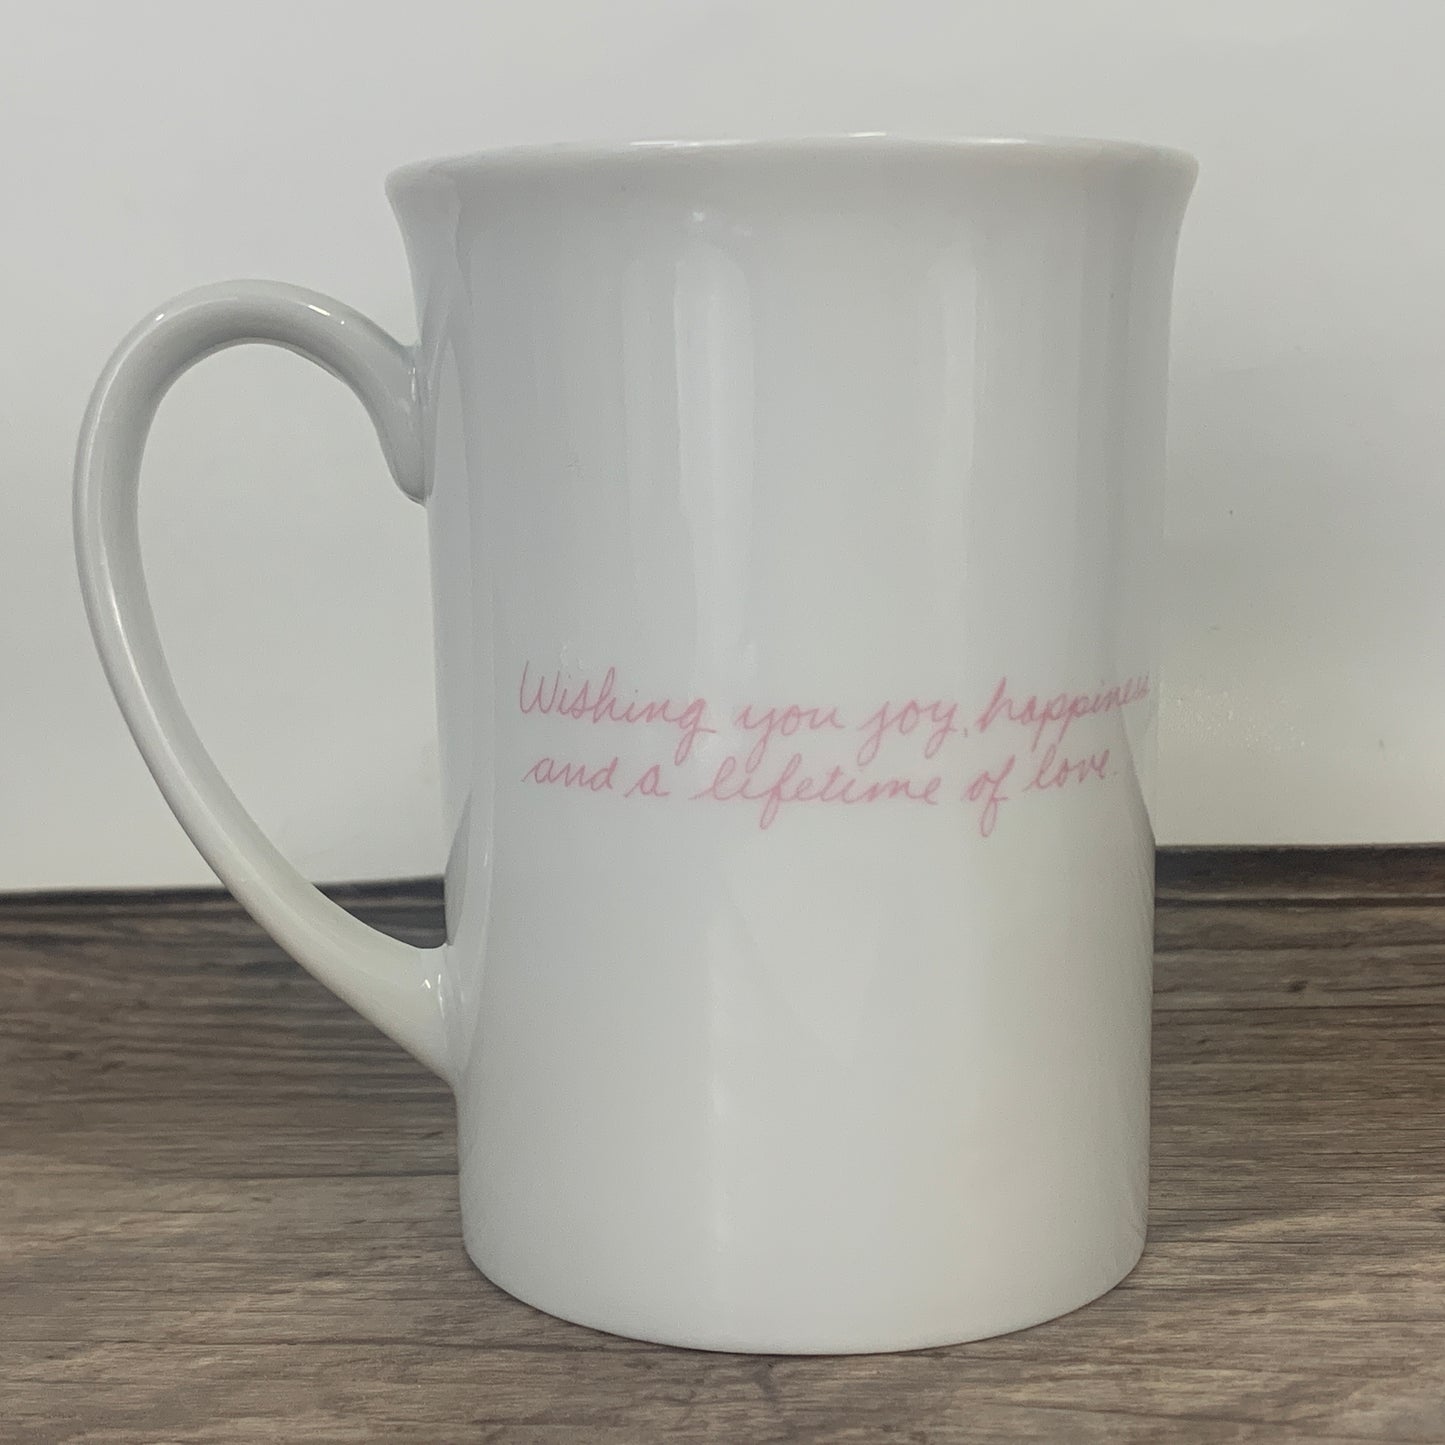 Kinka Enesco Japan Coffee Mug "Wishing you joy, happiness and a lifetime of love"